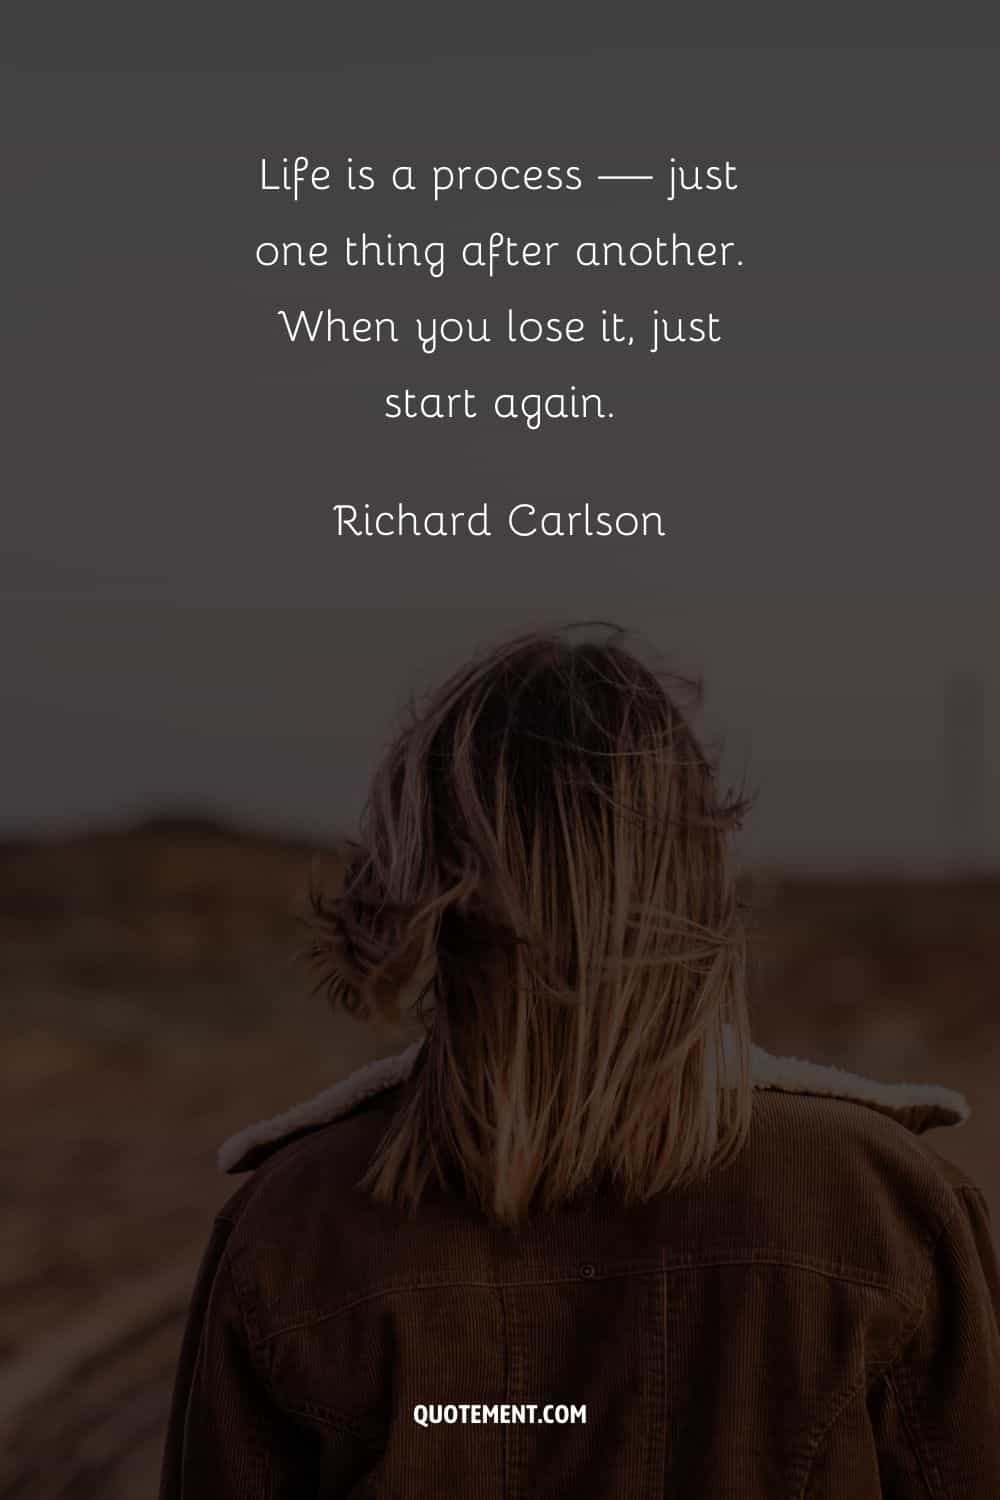 "La vida es un proceso: una cosa tras otra. Cuando la pierdas, vuelve a empezar". - Richard Carlson